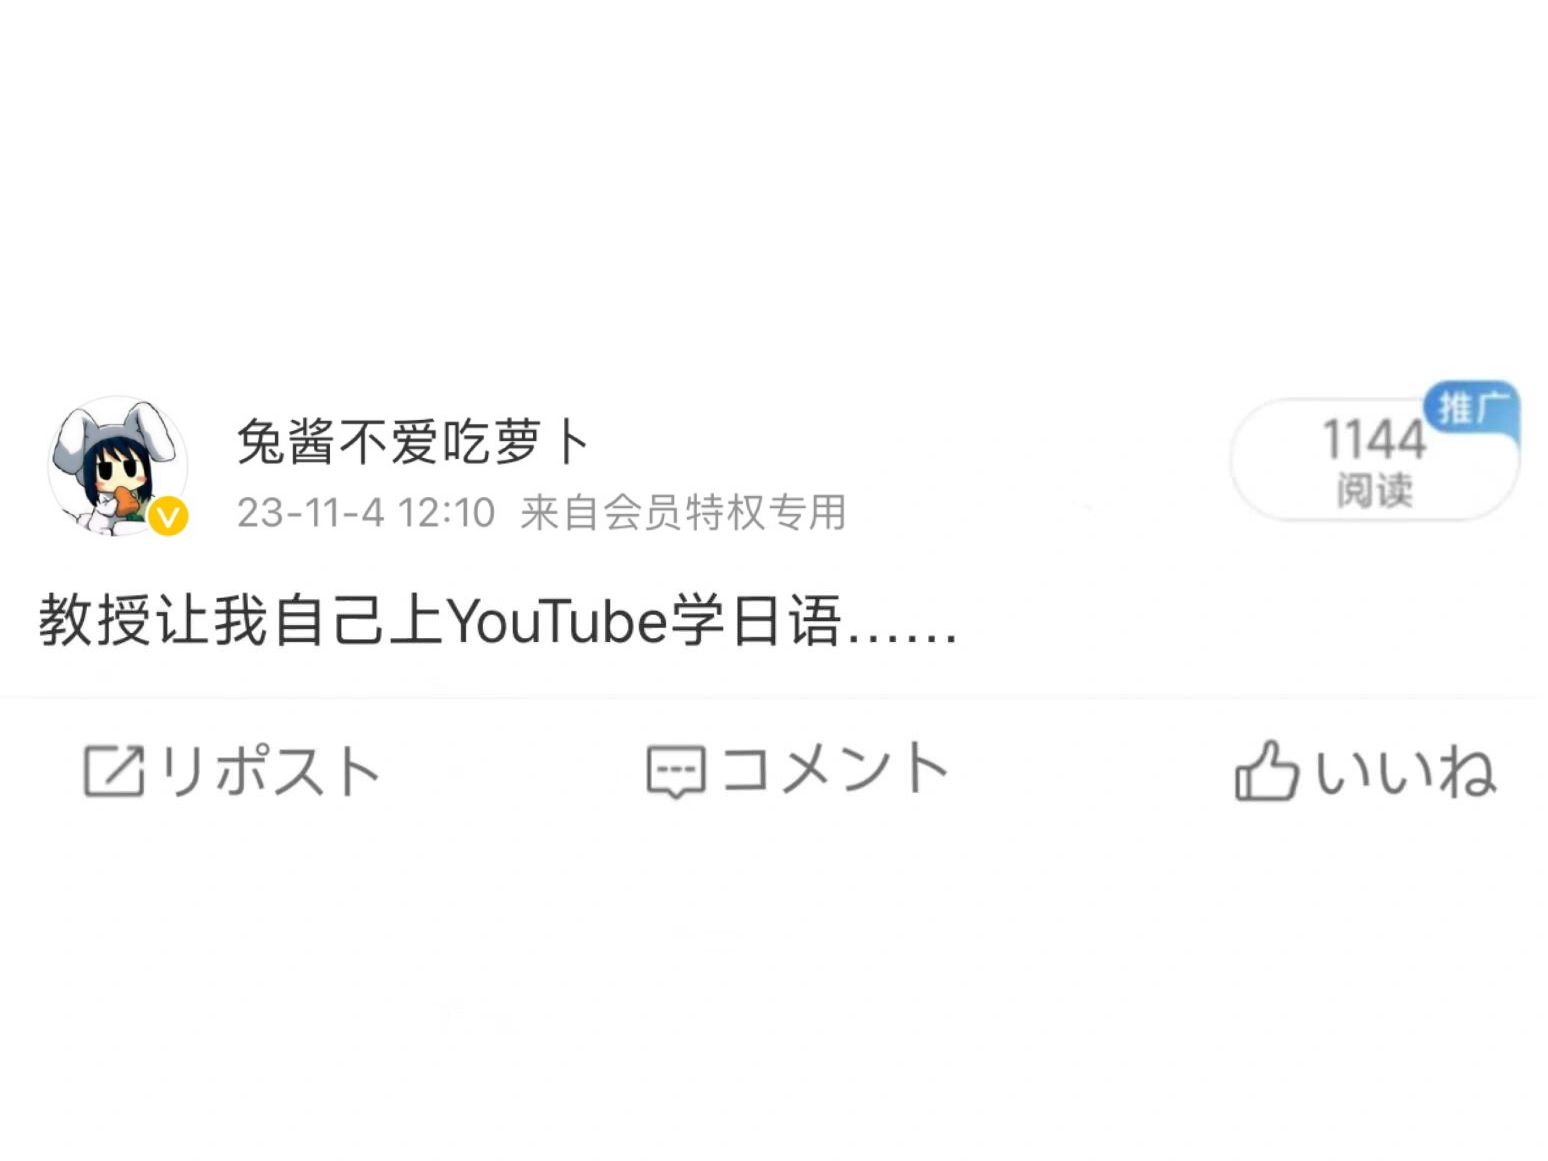 怪不得都说YouTube是考日语的天堂......